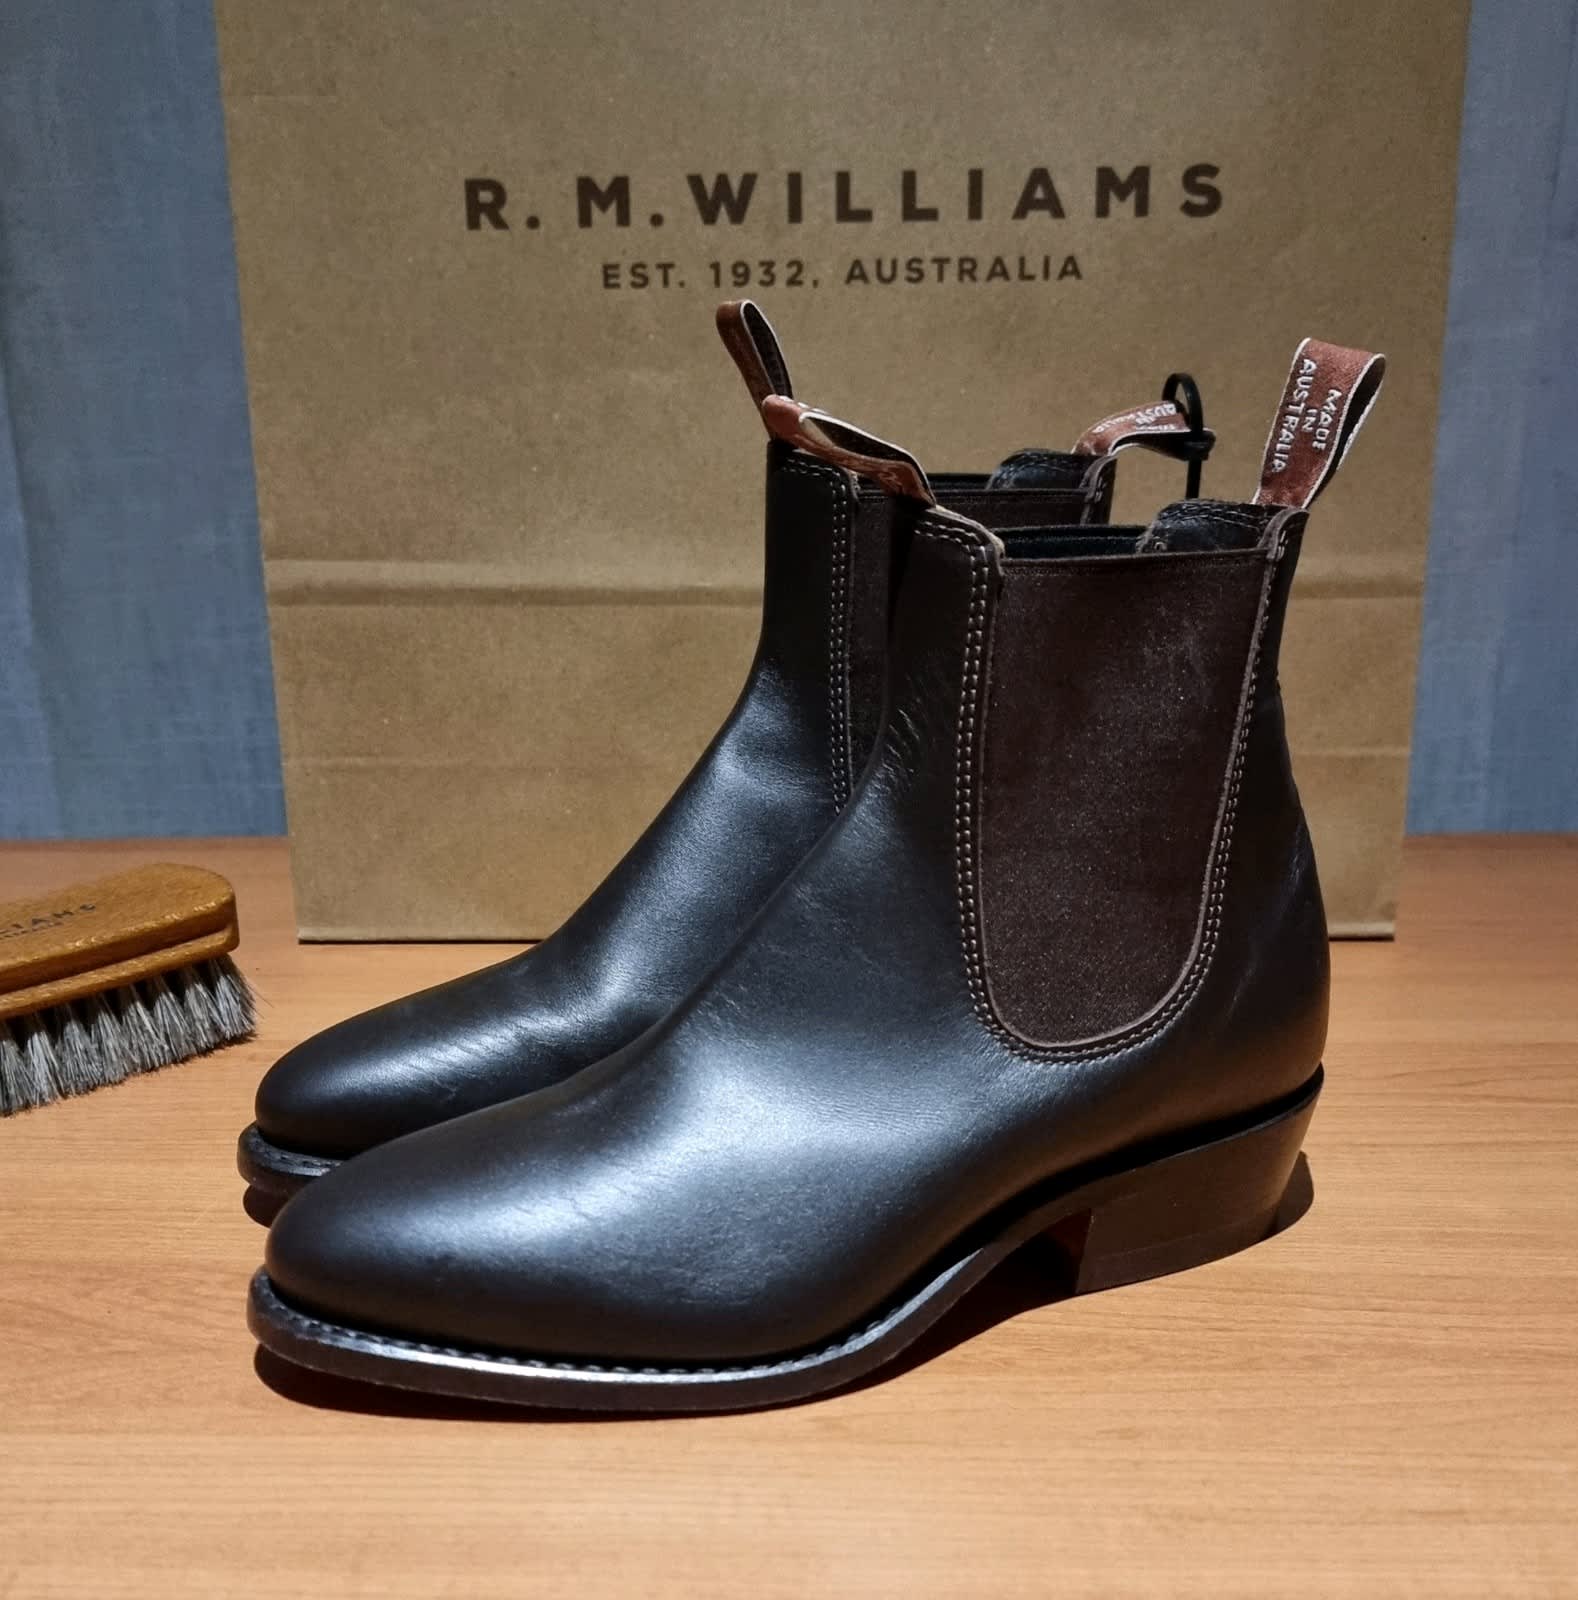 R.M.WILLIAMS - Made in Australia - ELMENS